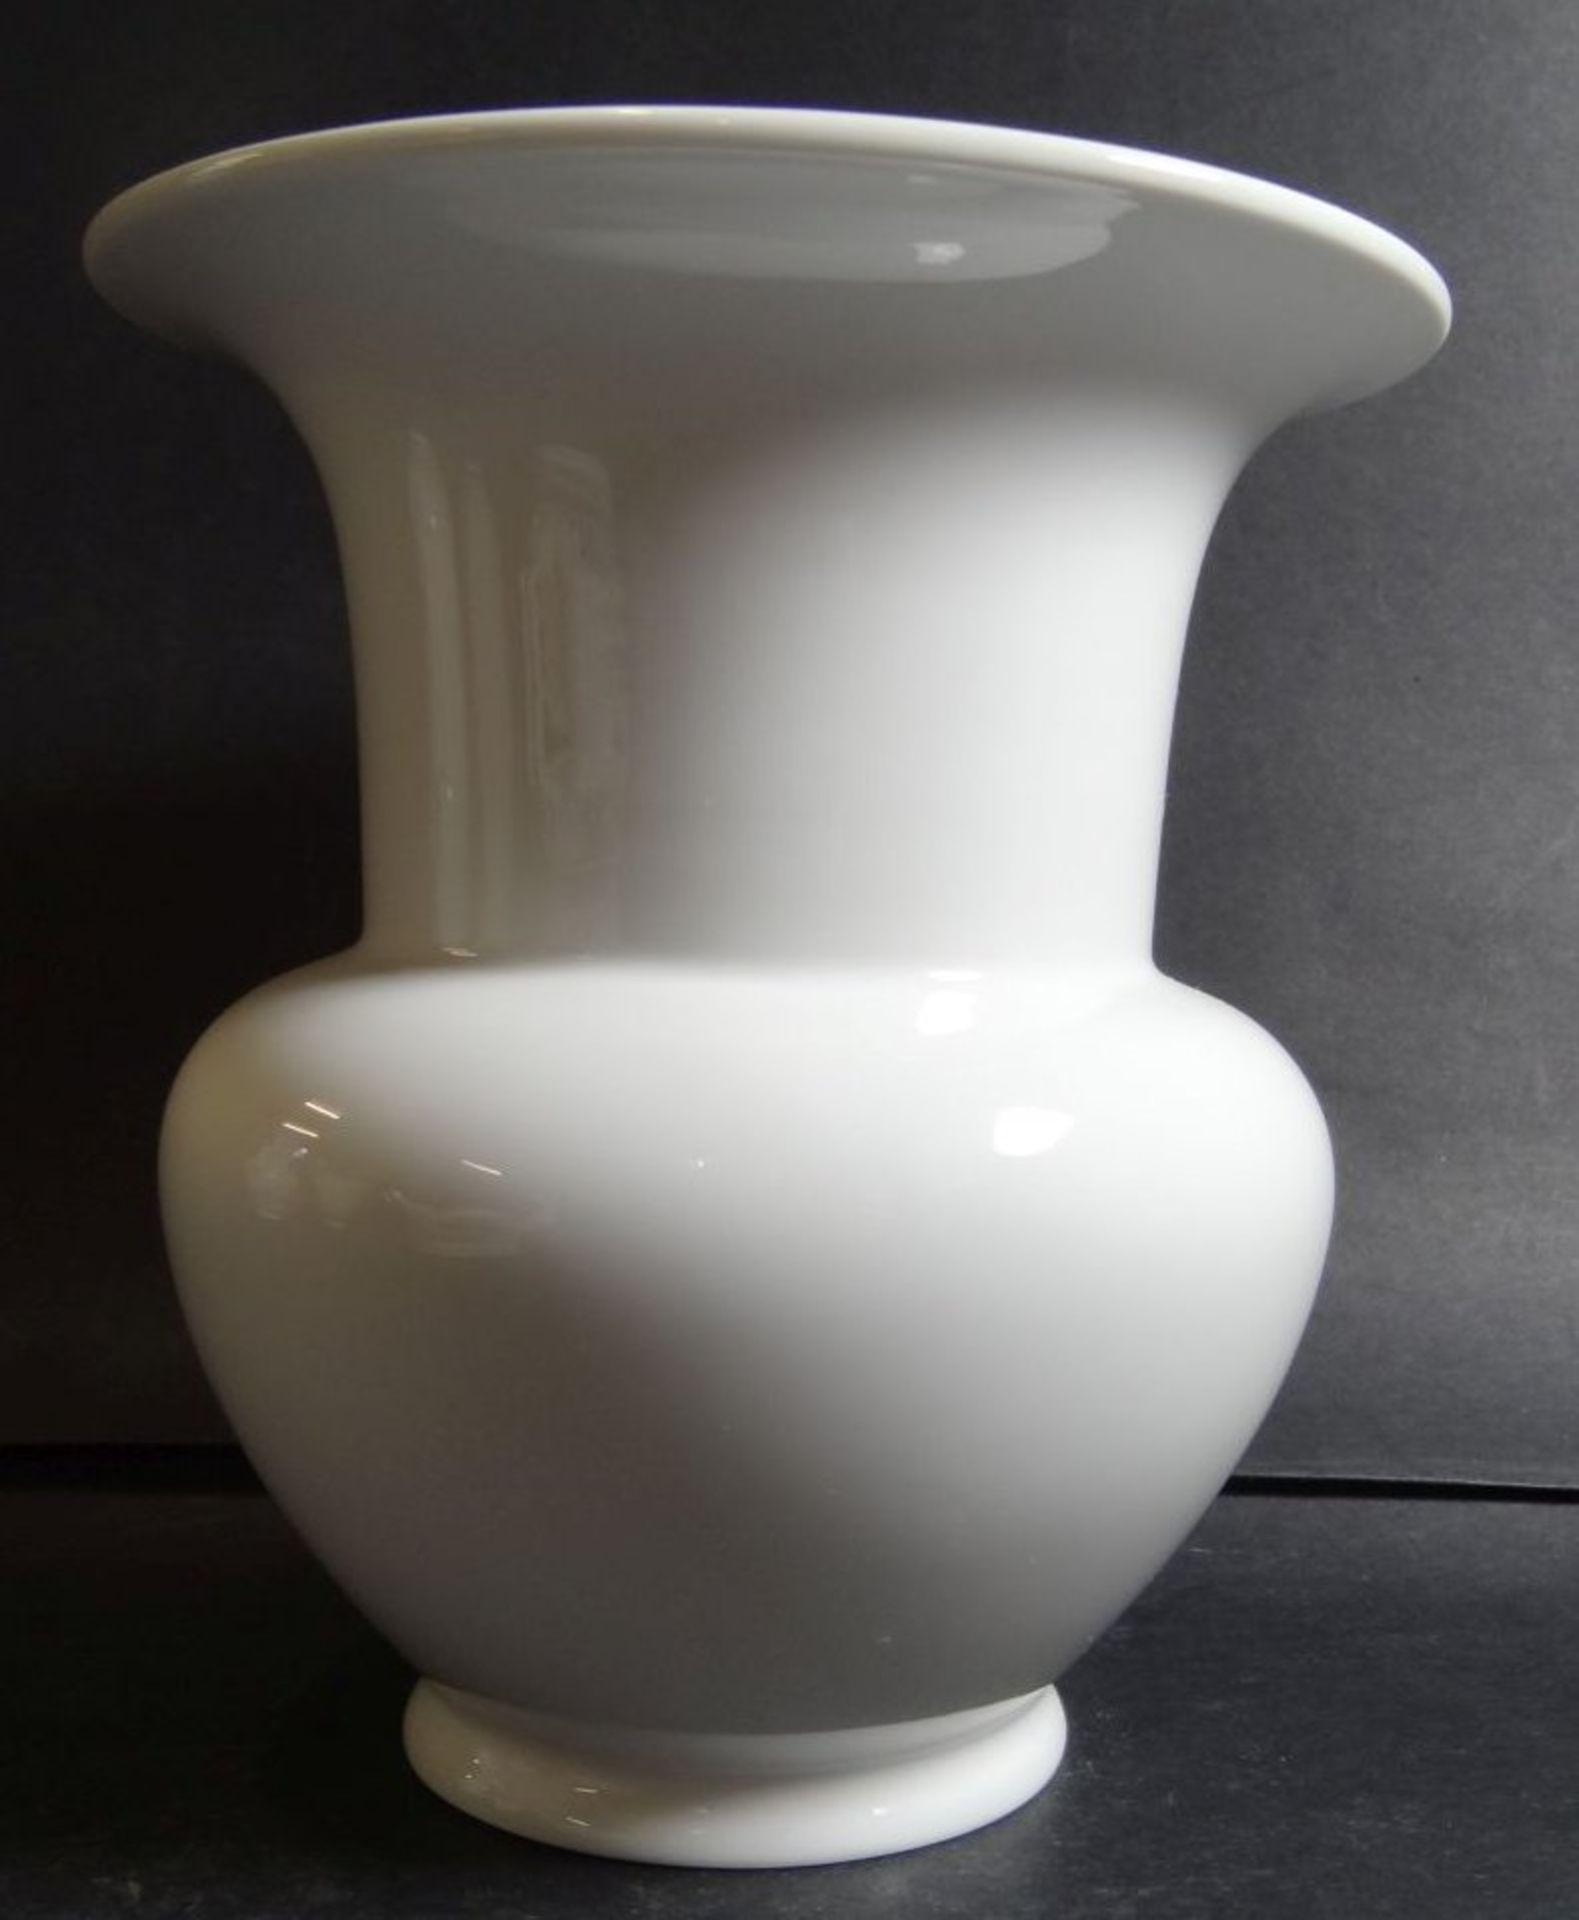 Vase "KPM" Berlin, weiss, H-14,5 cm- - -22.61 % buyer's premium on the hammer priceVAT margin